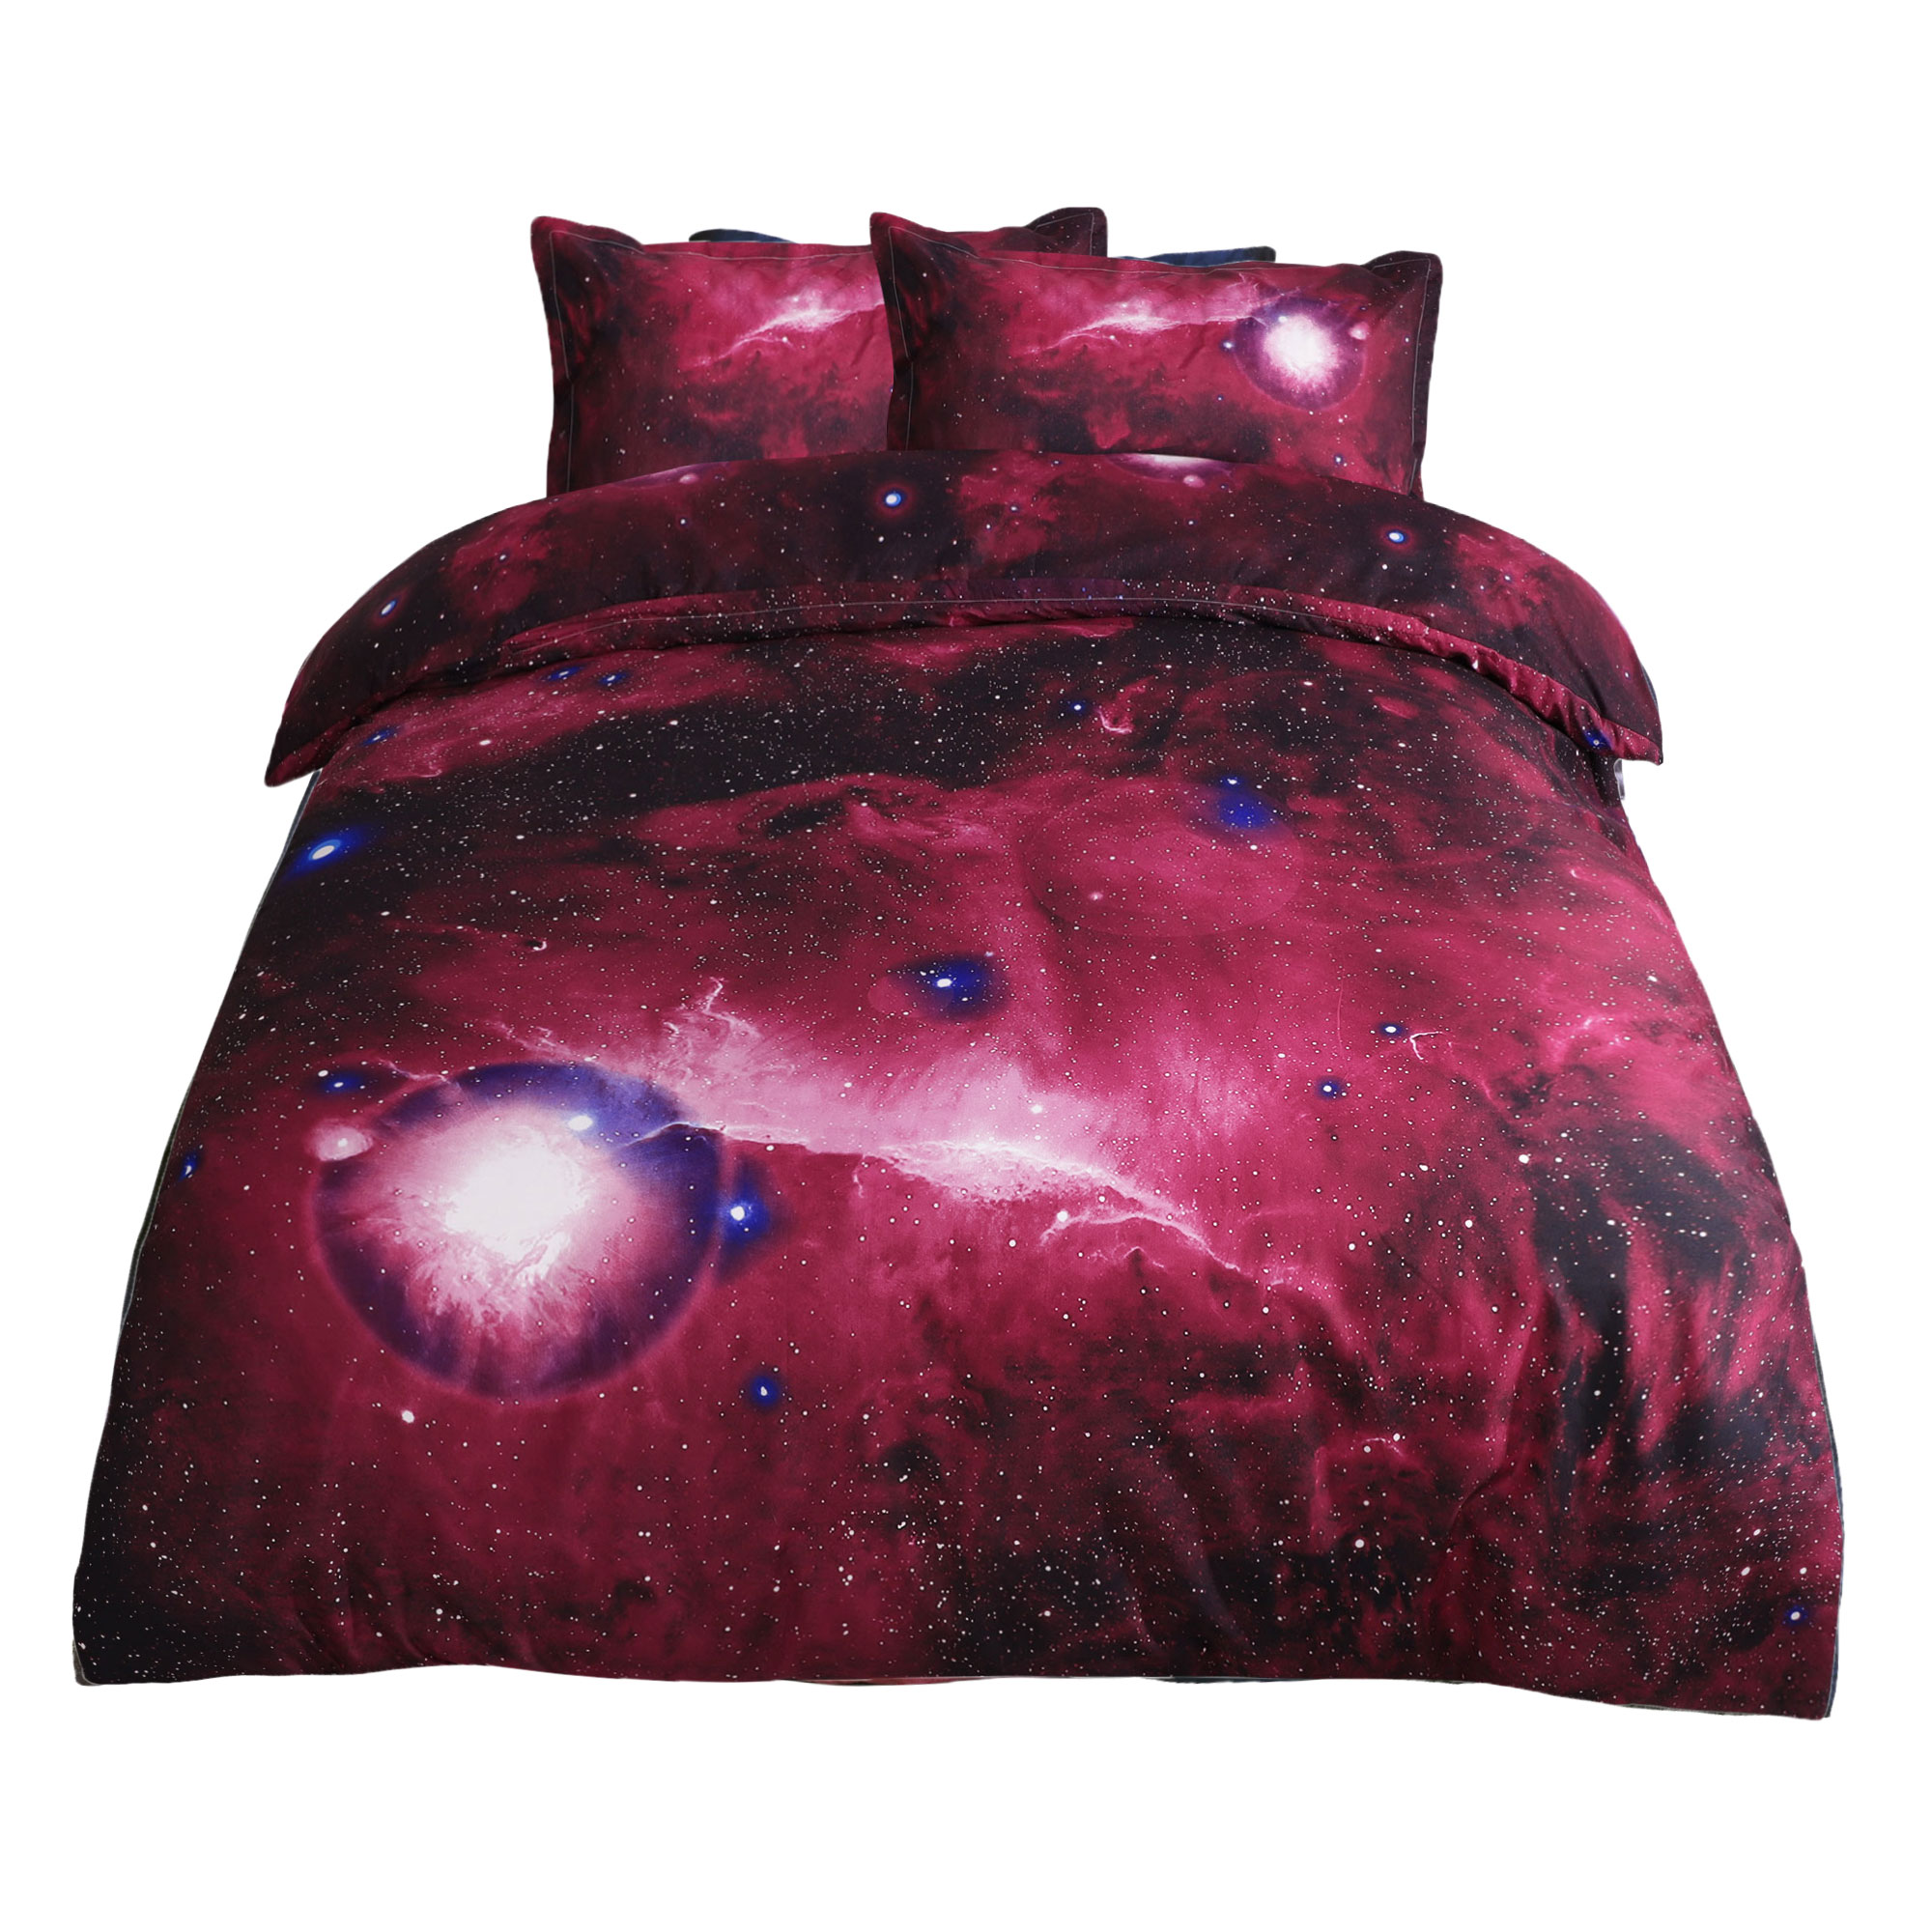 Unique Bargains 3D Star Sky Moon Night Duvet Cover Set Red Queen Size 3pcs